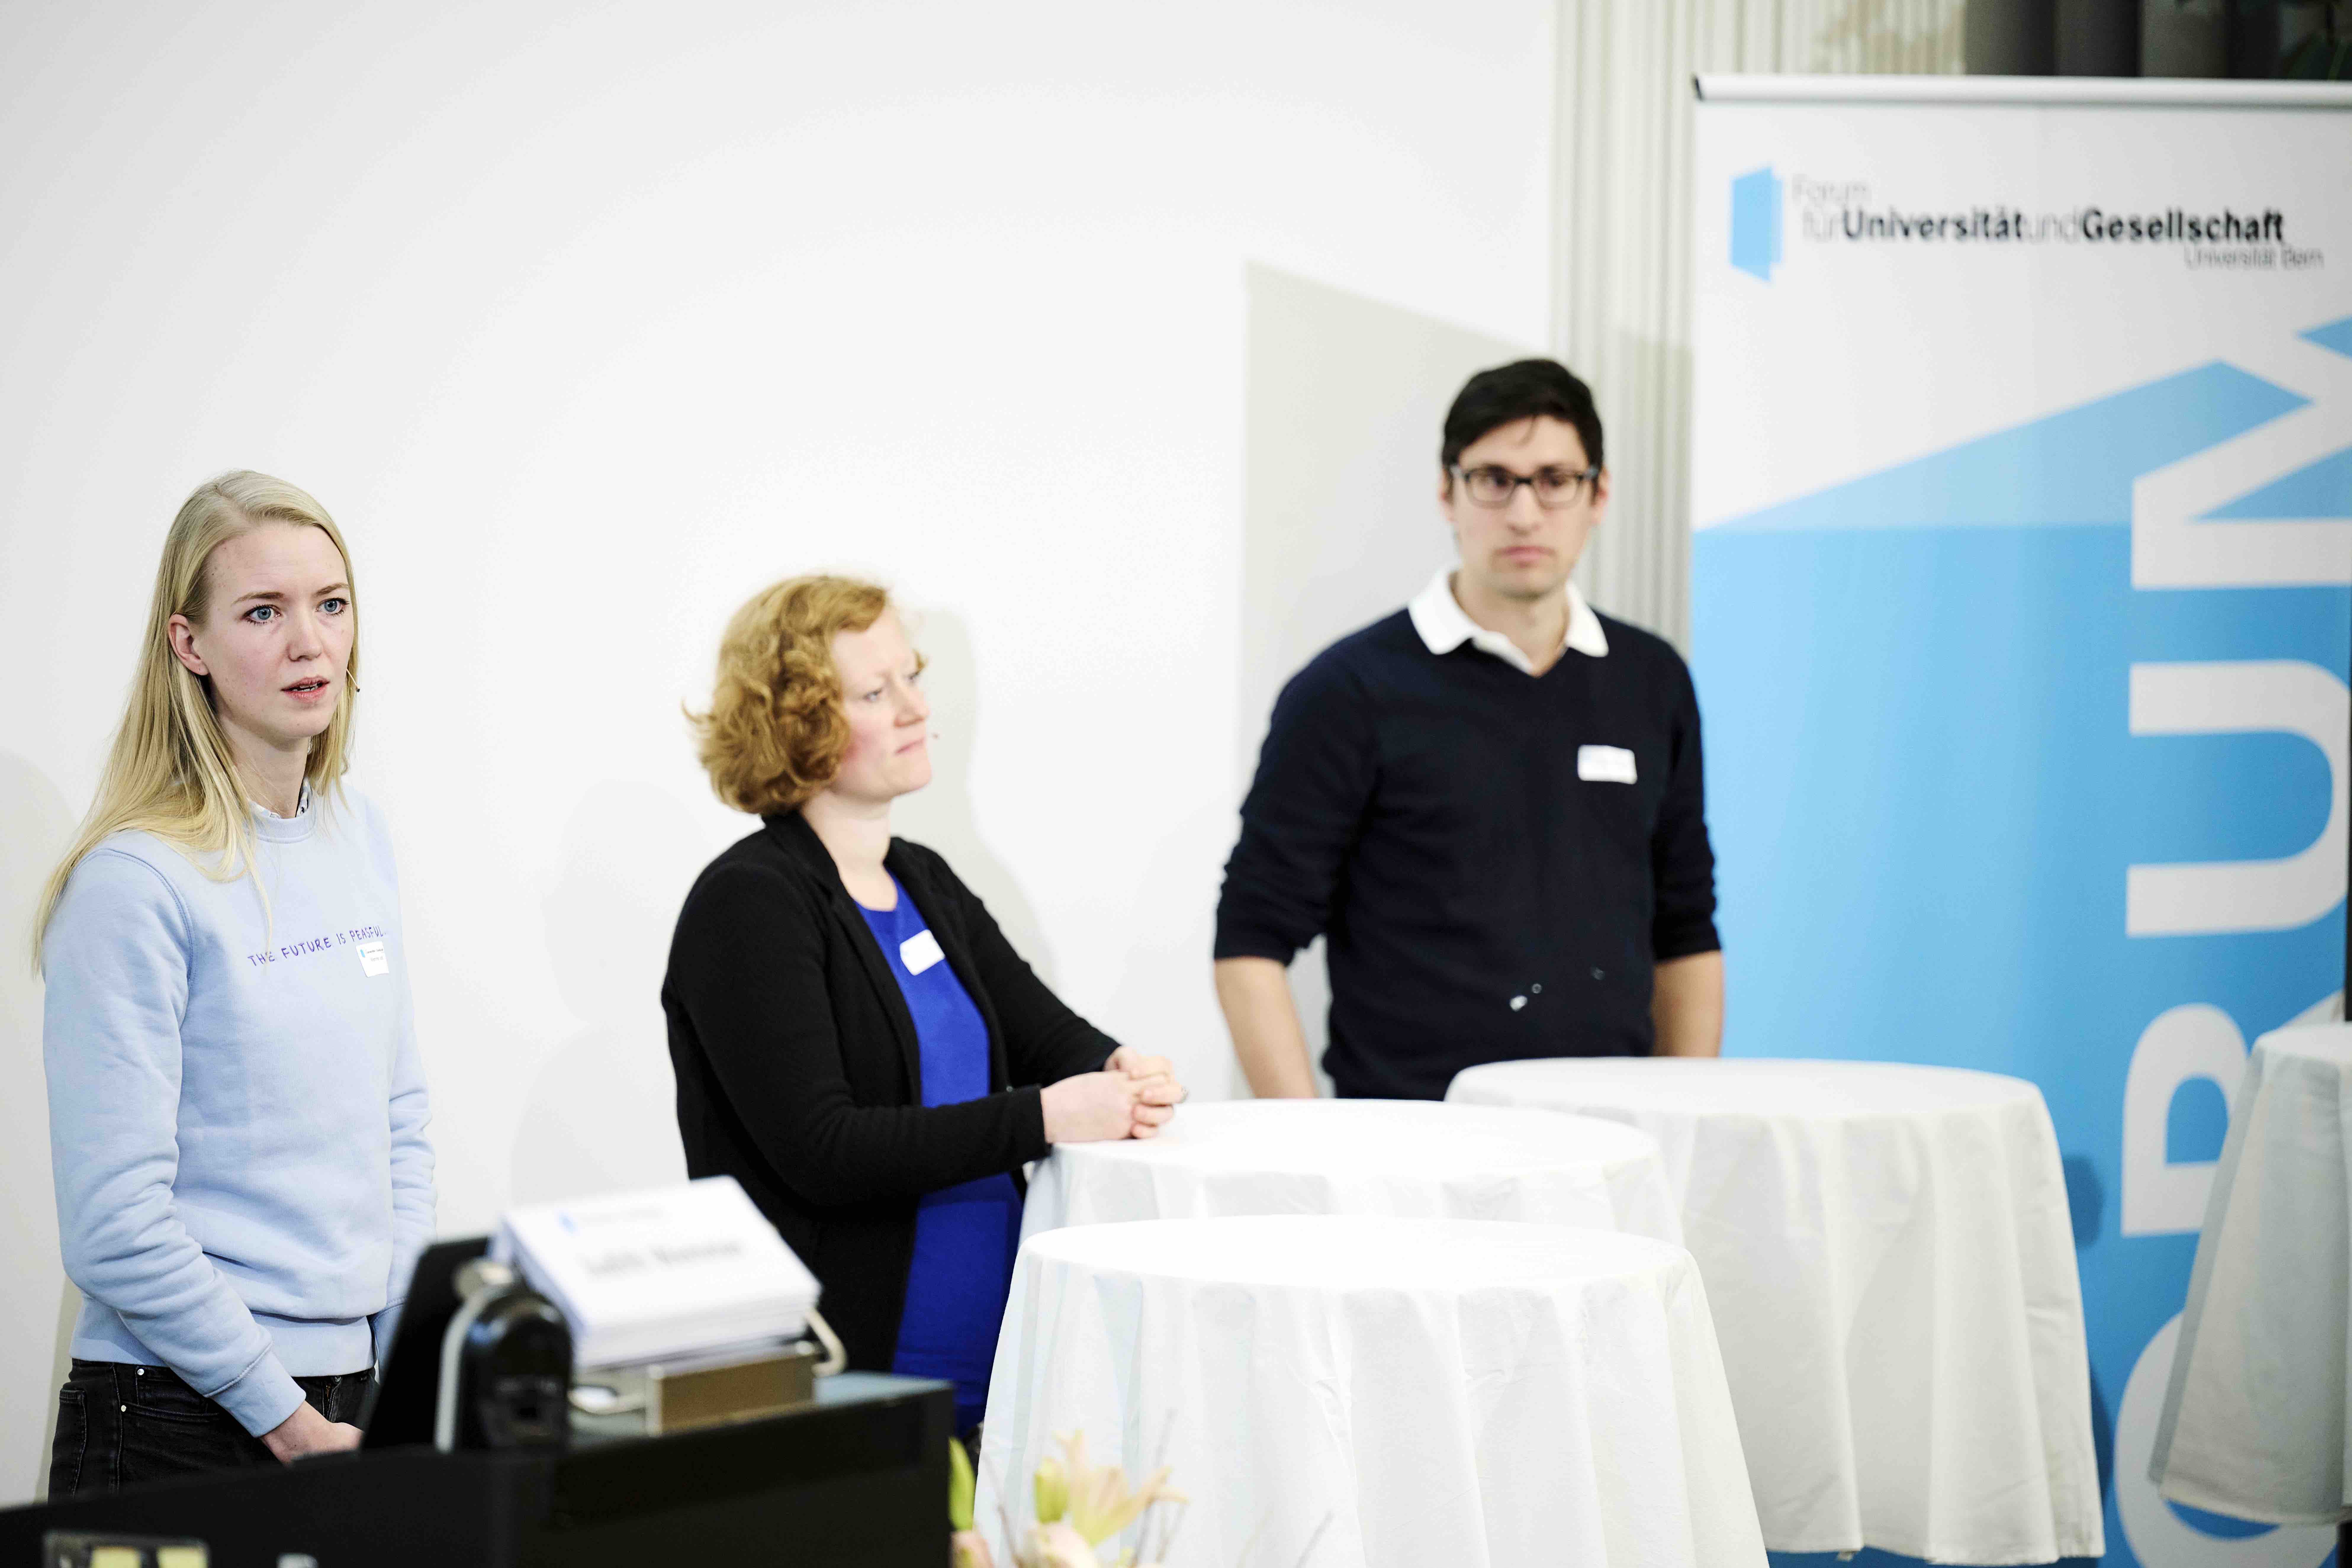 Judith Wemmer, Karin Spori und Christian Bärtsch stehen während ihrer Podiumsdiskussion an Stehtischen mit weissen Tischtüchern. Im Hintergrund ist ein Banner mit dem blauweissen Forumslogo sichtbar.